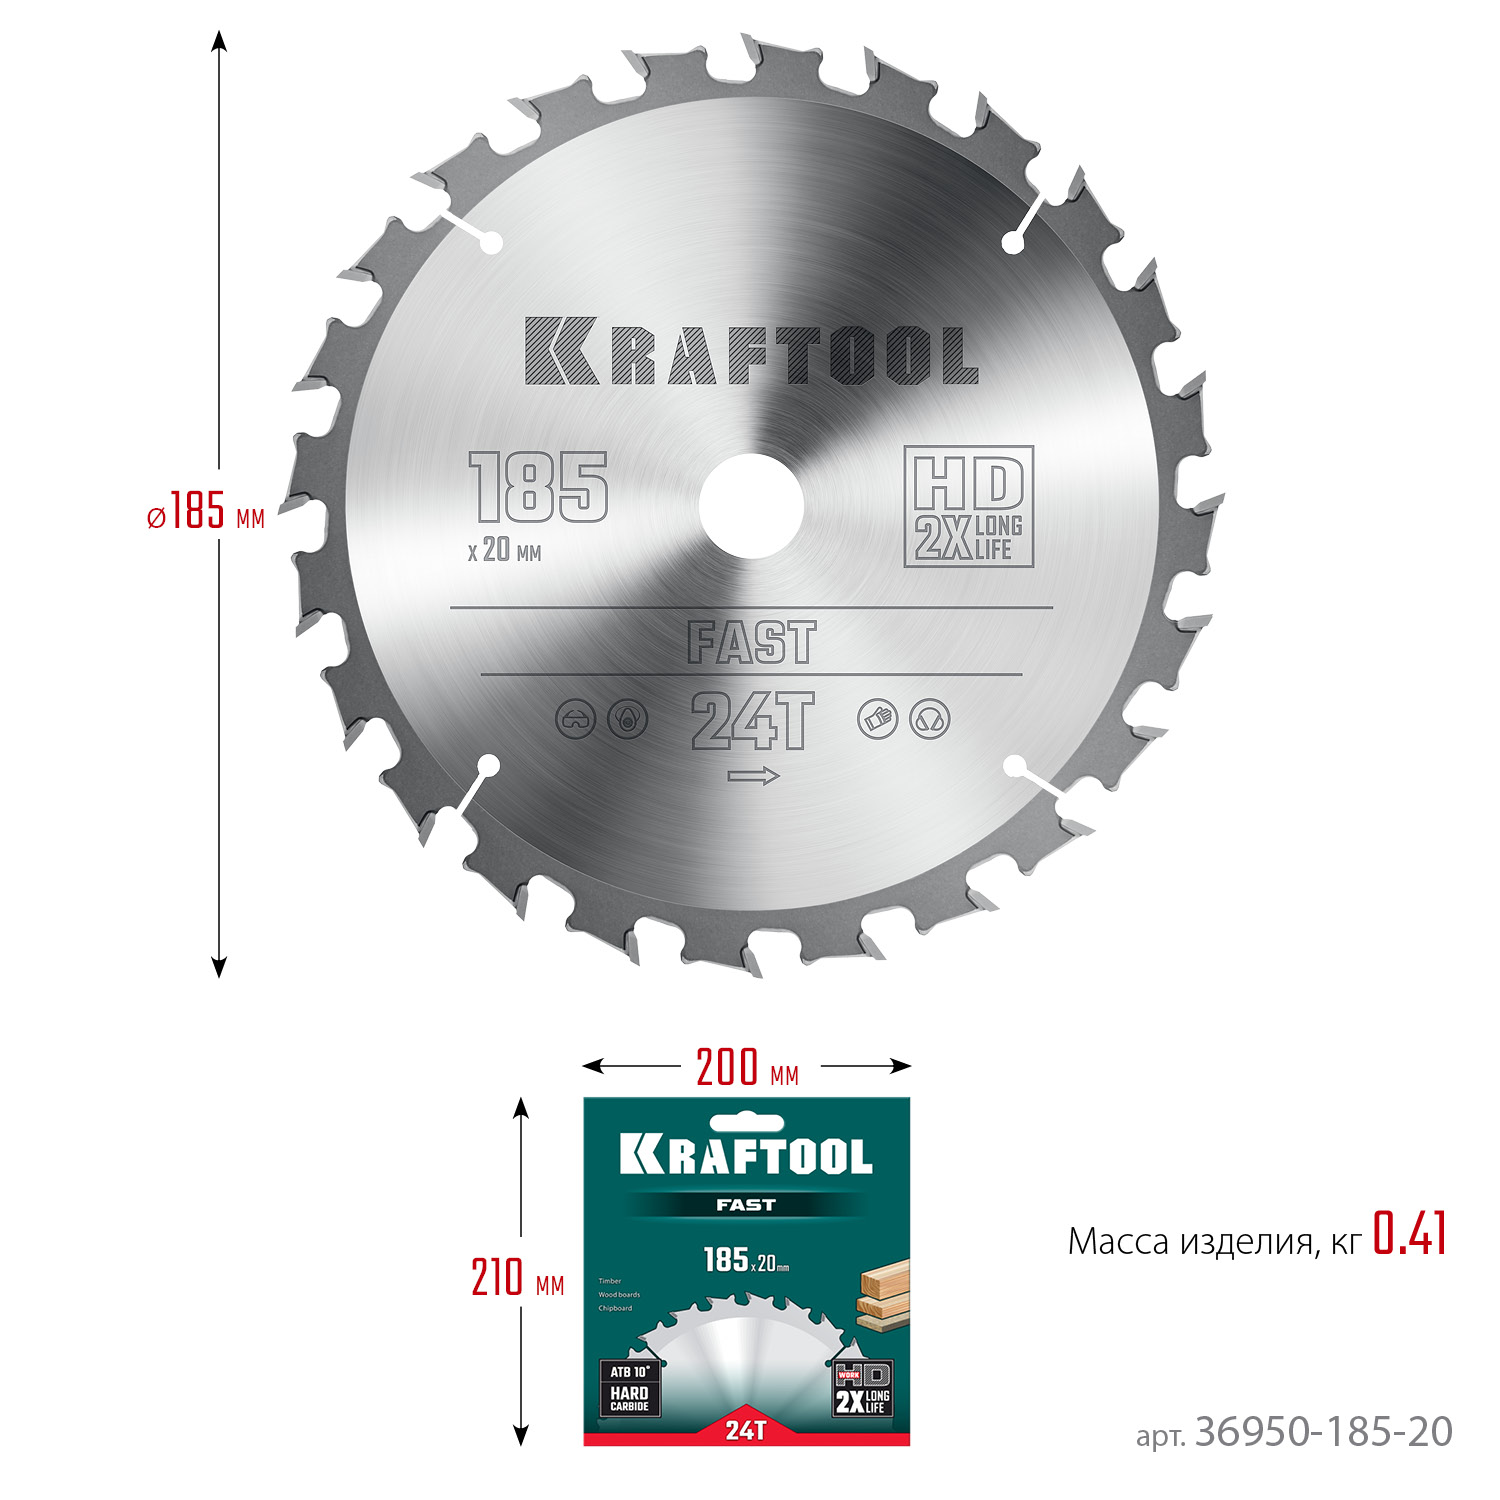 KRAFTOOL Fast, 185 х 20 мм, 24Т, пильный диск по дереву (36950-185-20)